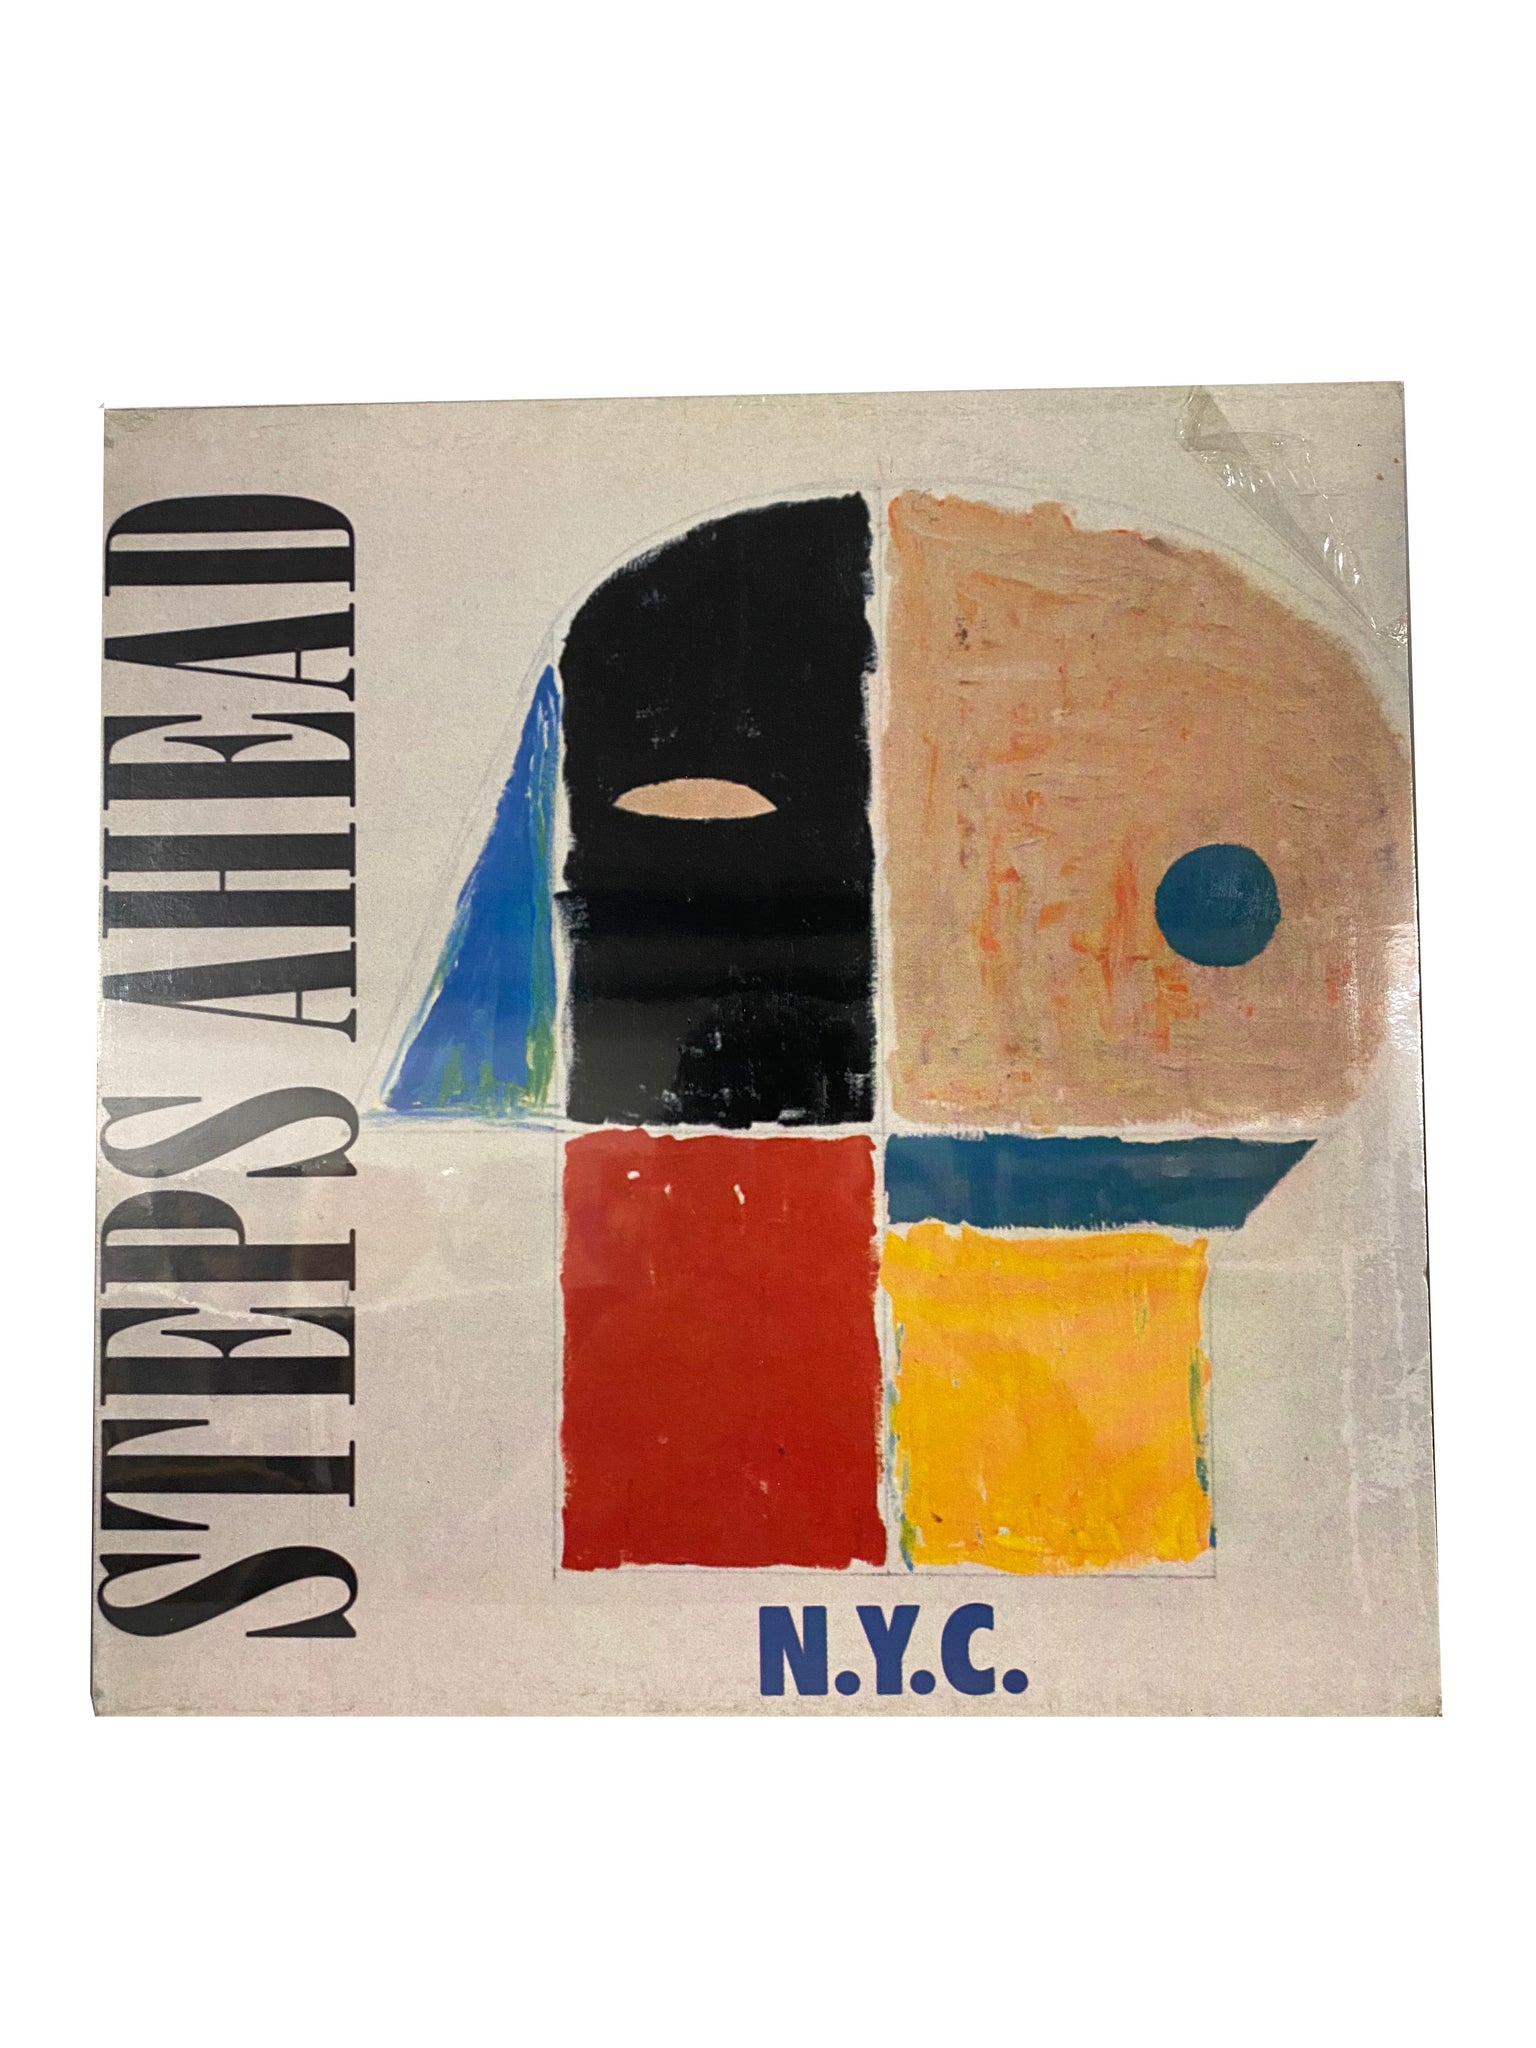 N.Y.C (LP; ALBUM), by Steps Ahead